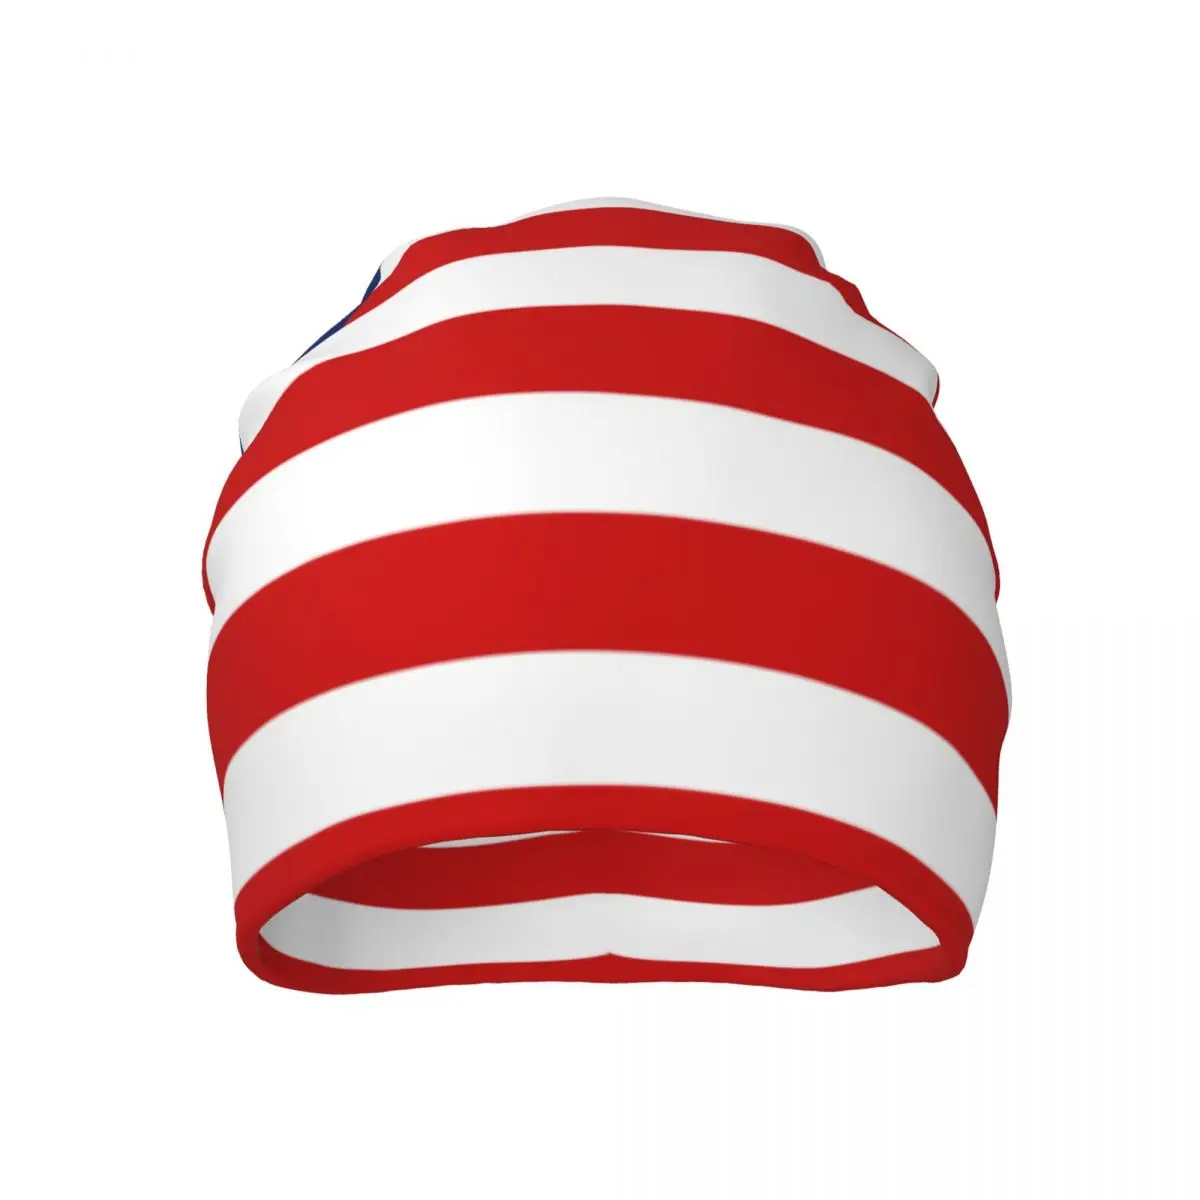 Американский Флаг Мужские Шапочки для Женщин Уличные Шляпки-Капоты Унисекс Вязаная Шапка В стиле Хип-Хоп